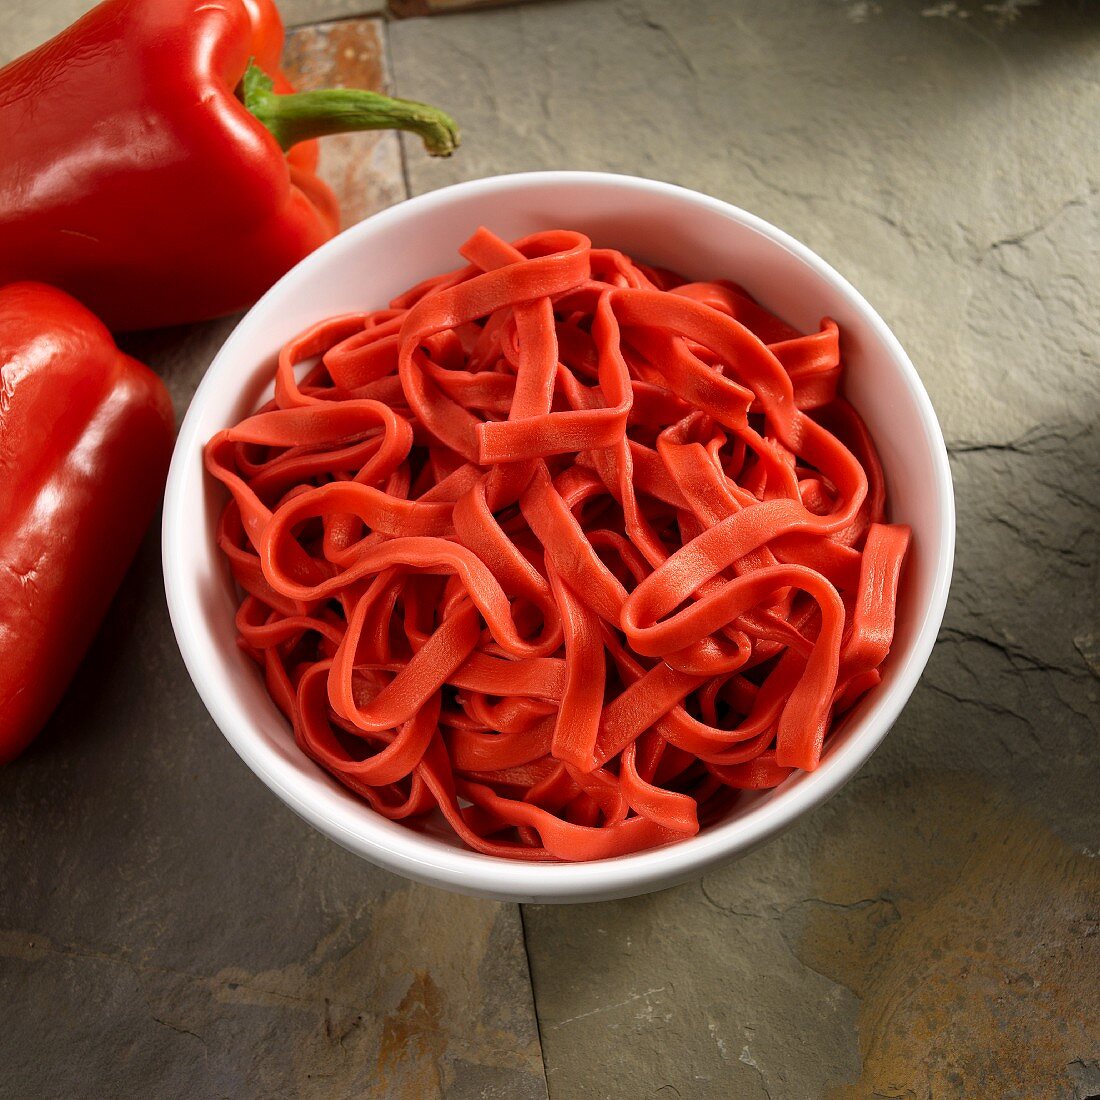 Homemade pepper pasta